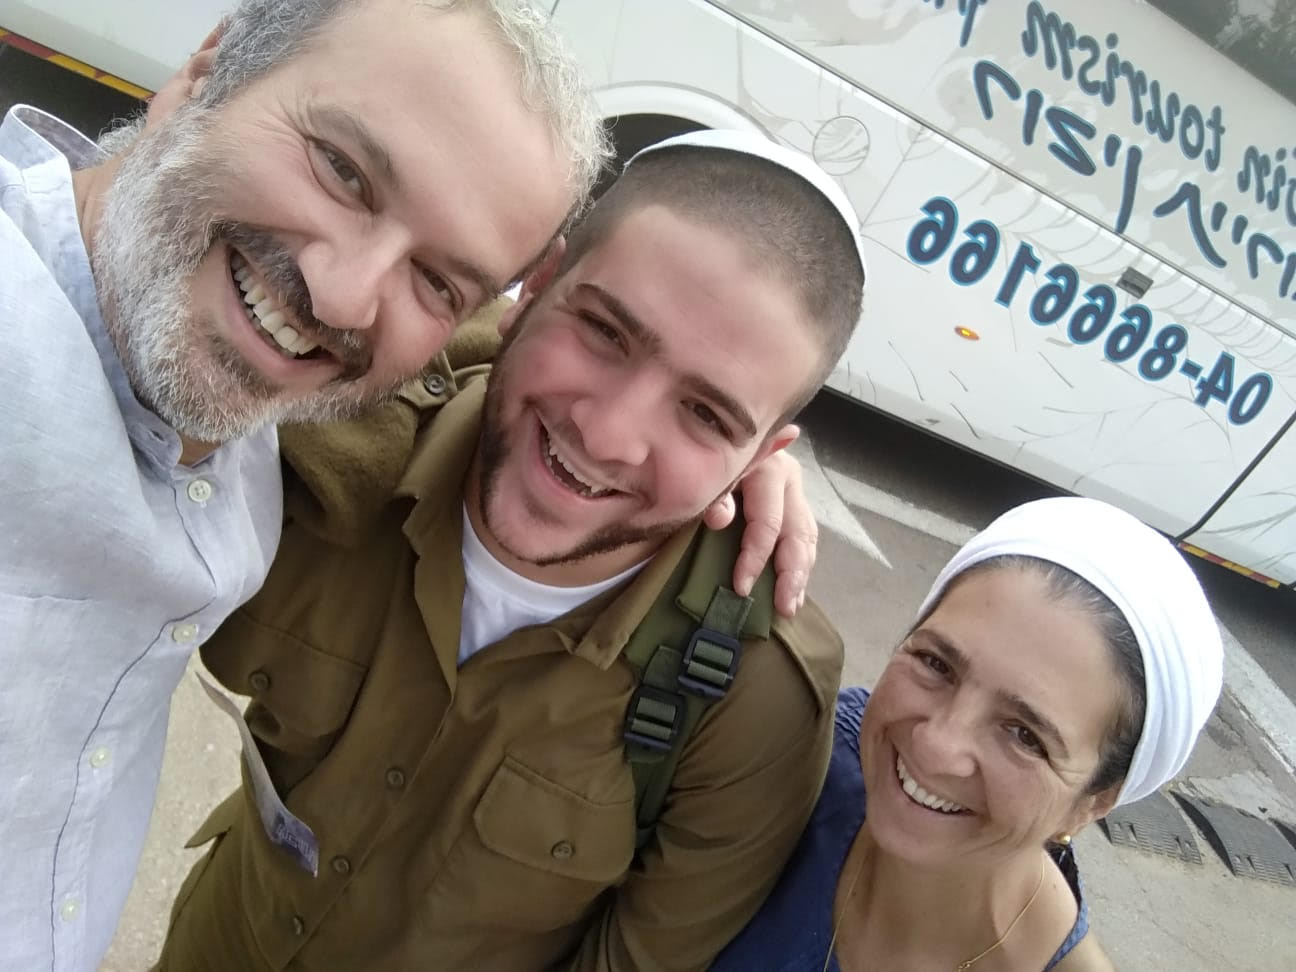 עדין כהן עם הוריו. צילום: דו"צ